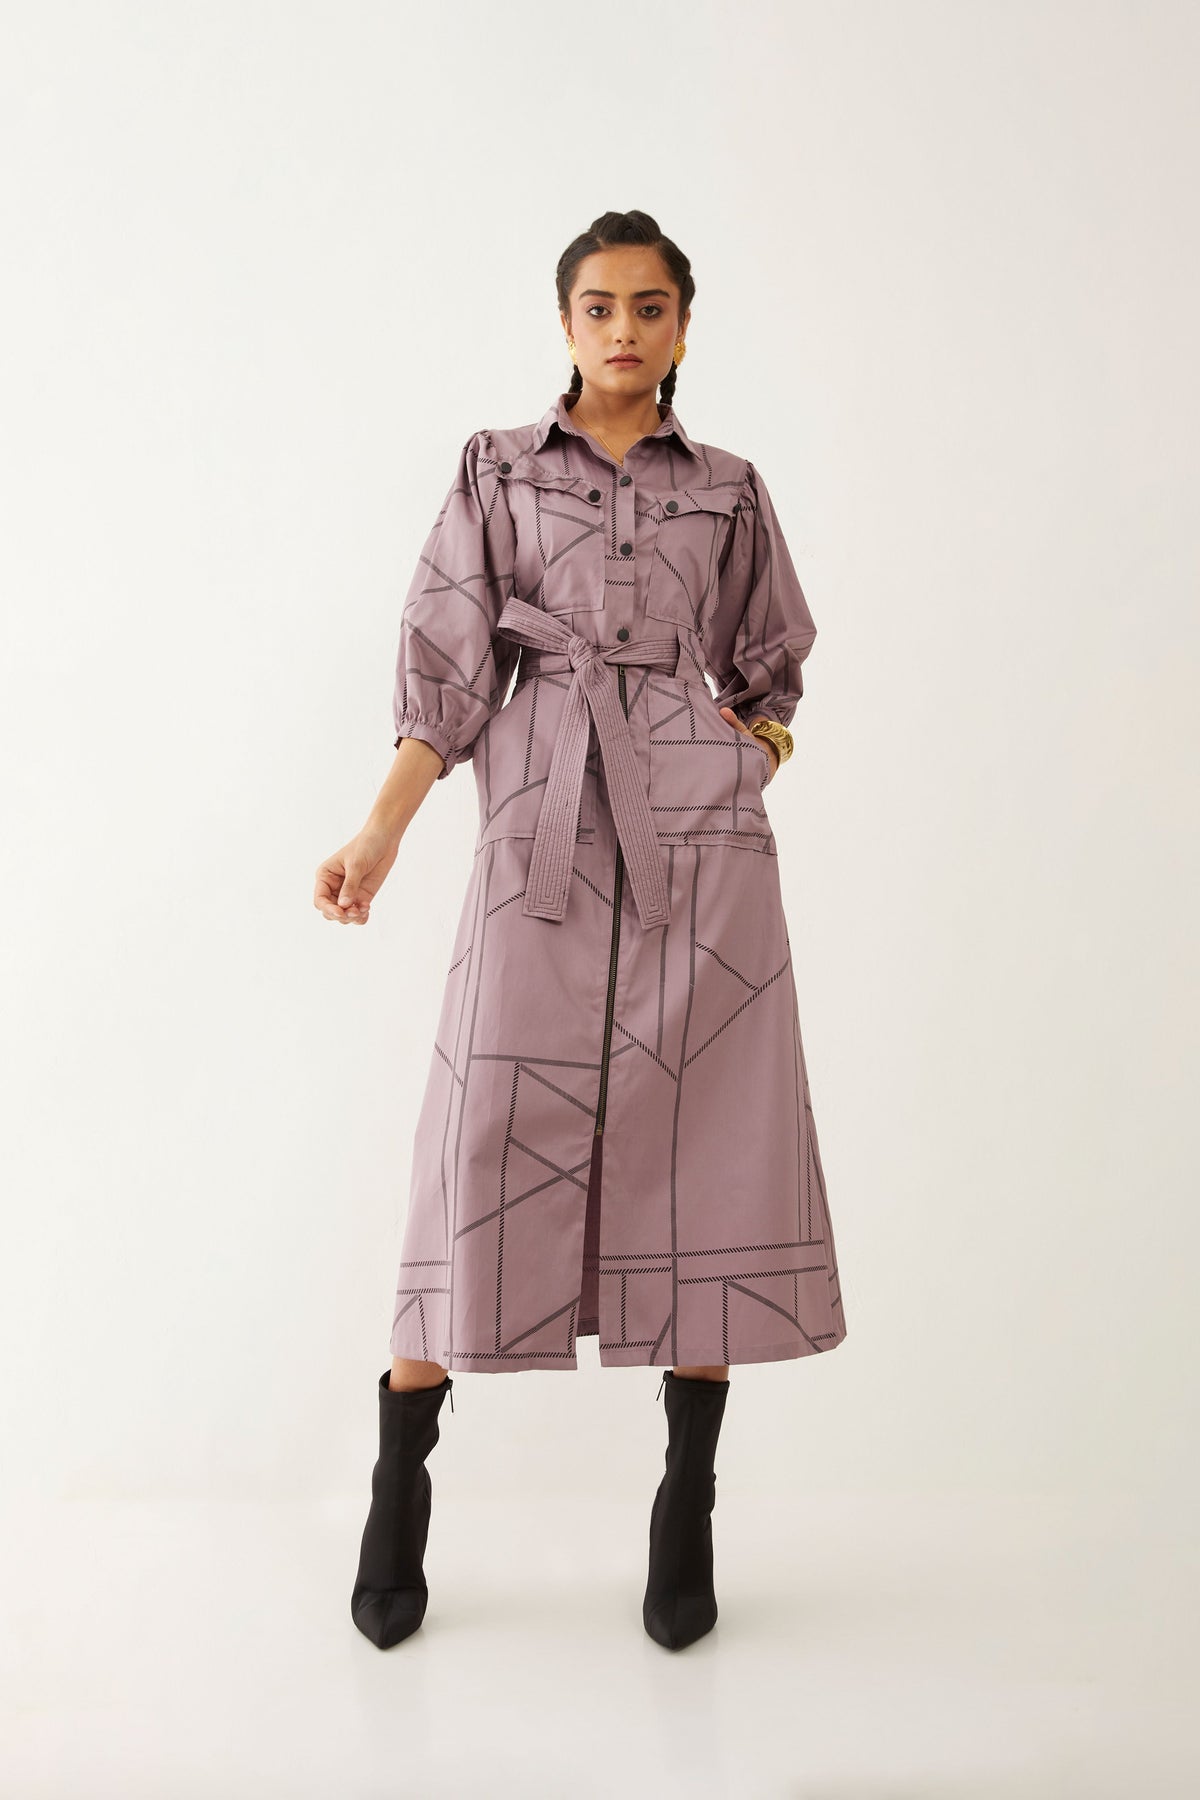 Mizuri Dress In Pipeline Print